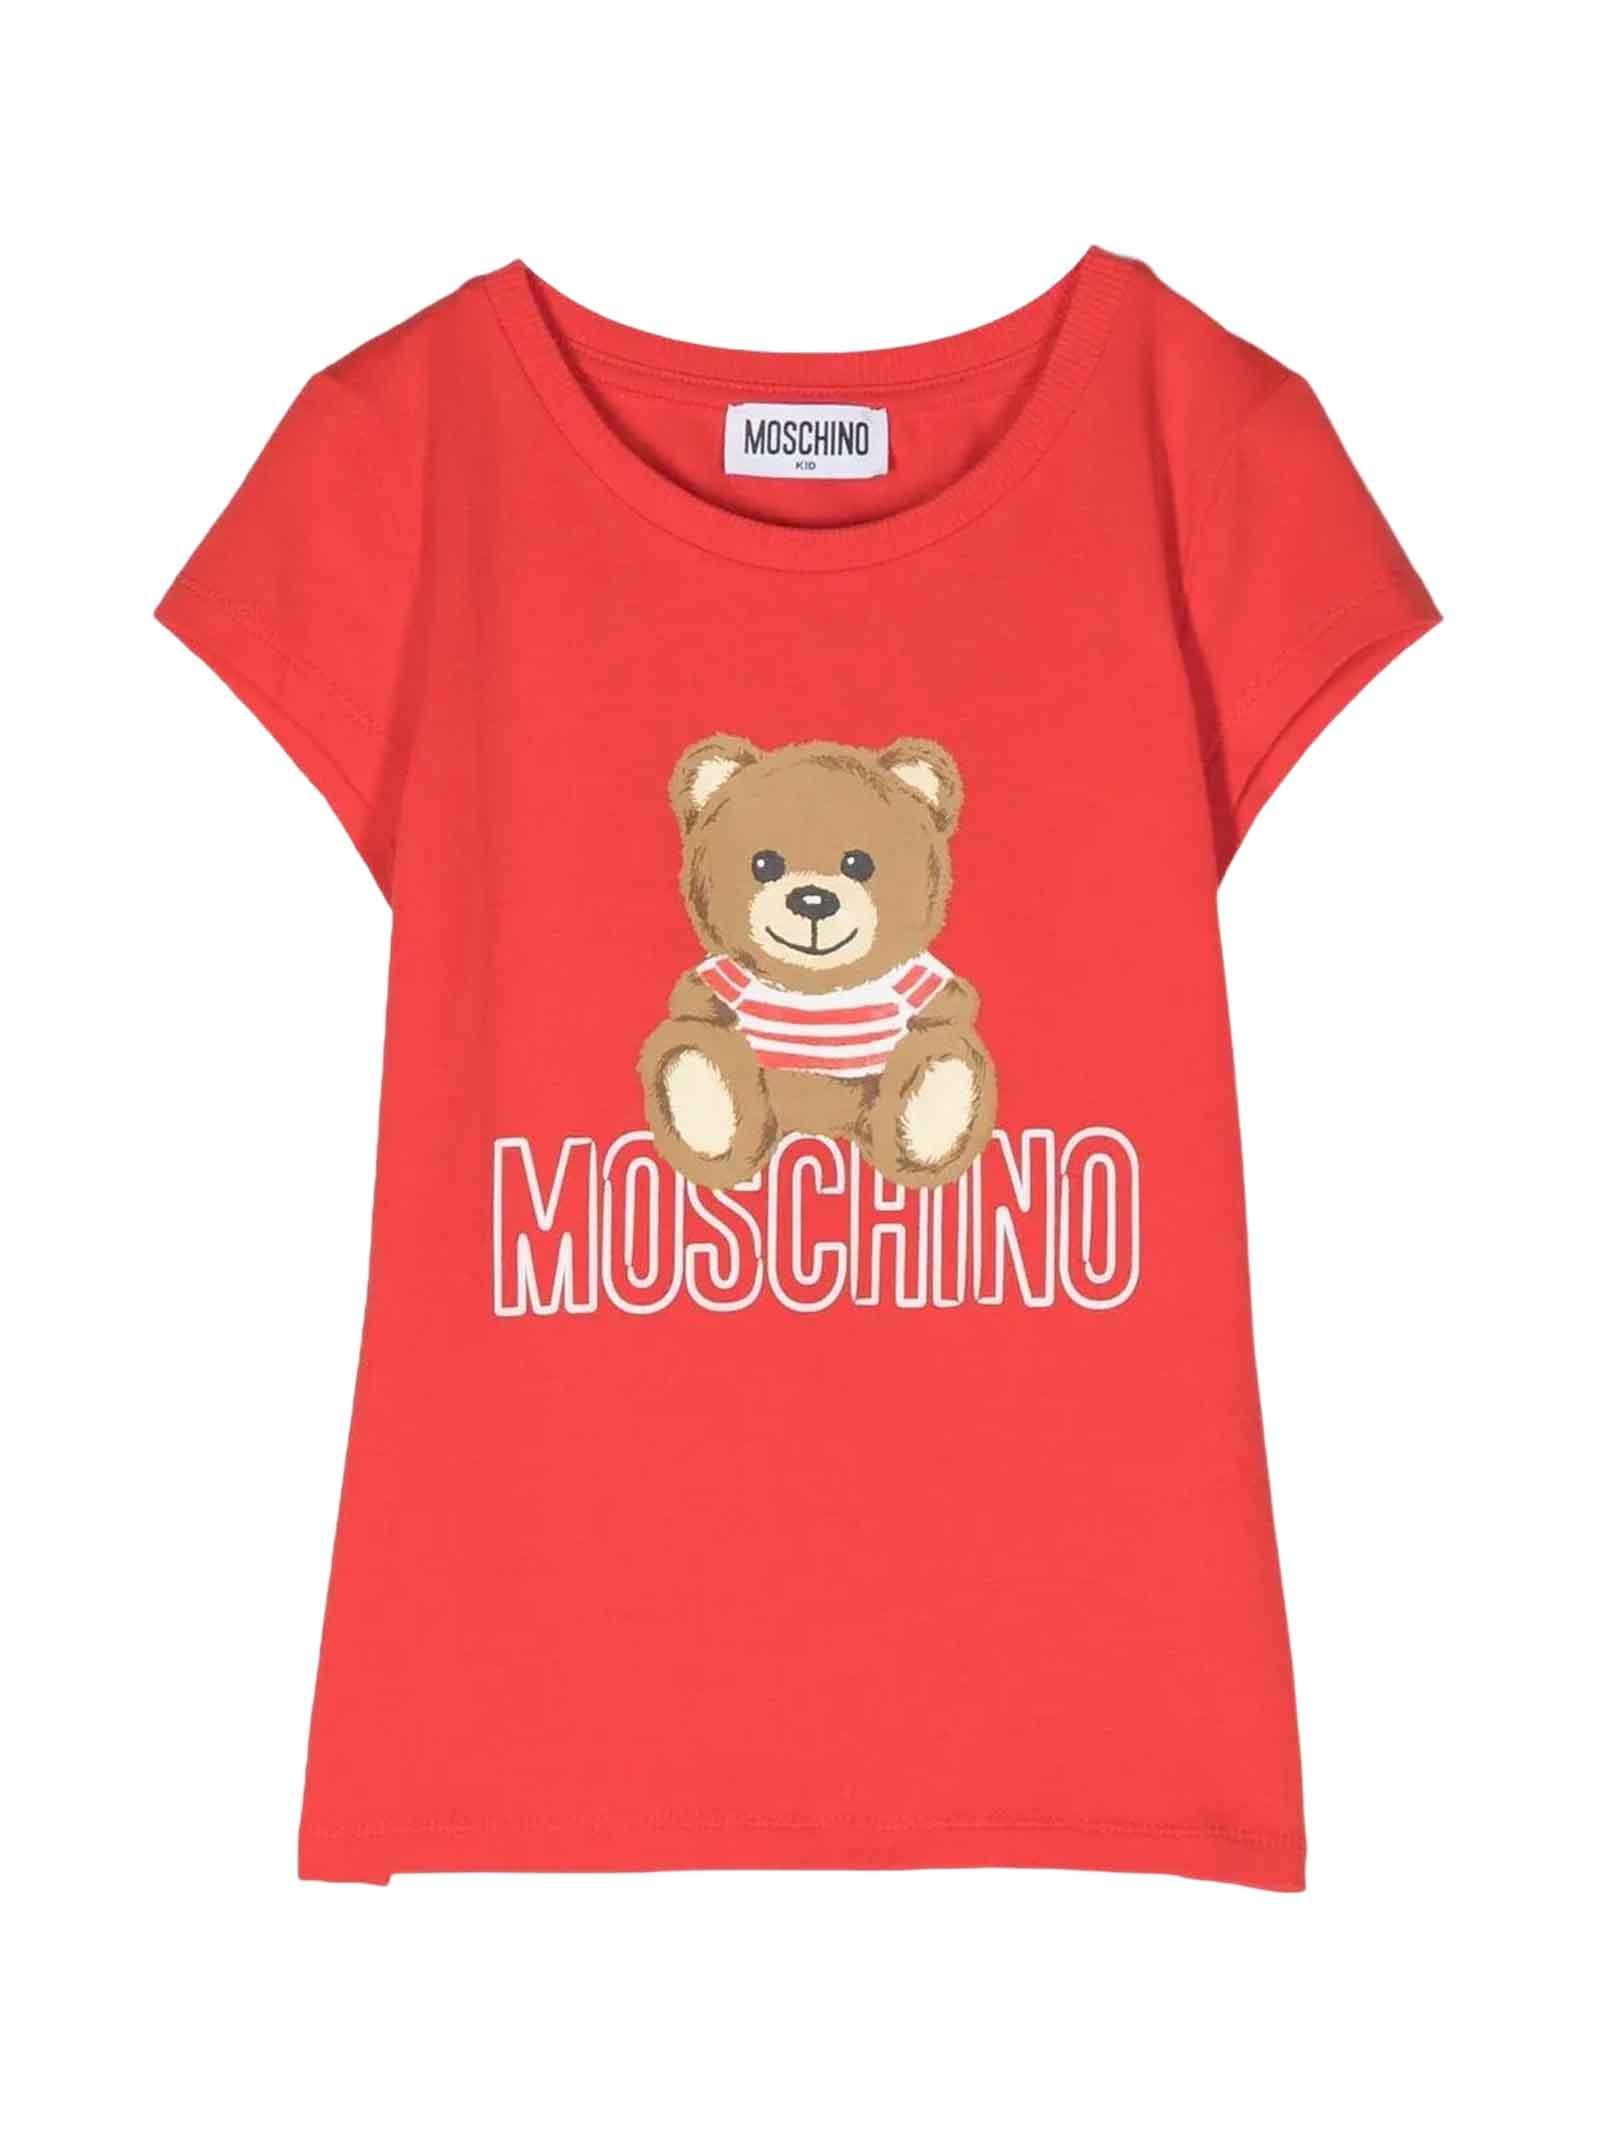 Moschino Red T-shirt Girl